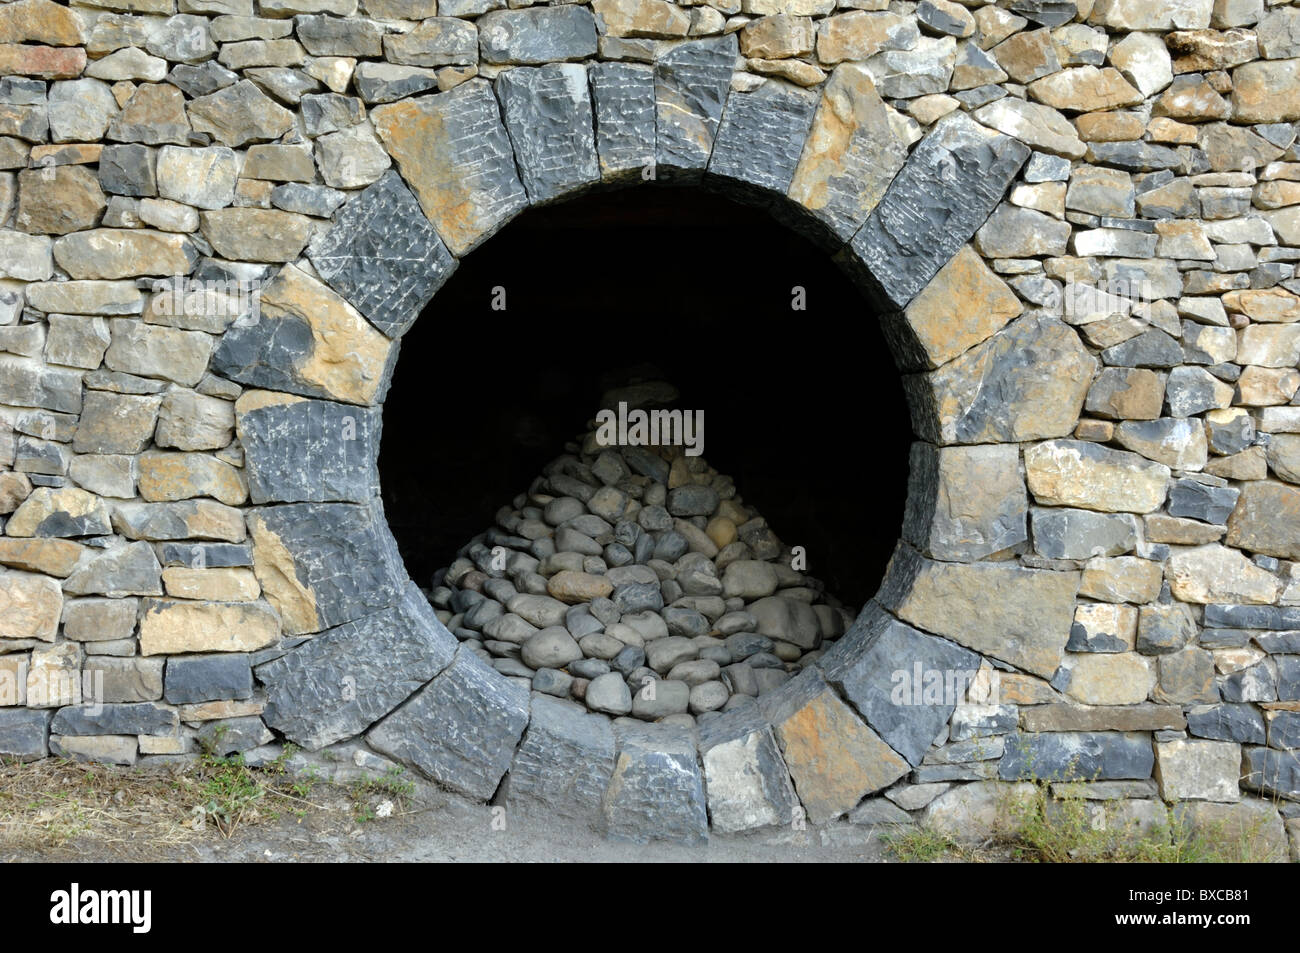 Refuge d'Art ou Art terrestre par Andy Goldsworthy, ou cabane en pierre sèche avec fenêtre circulaire, près des Thermes, digne-les-bains, Alpes-de-haute-Provence France Banque D'Images